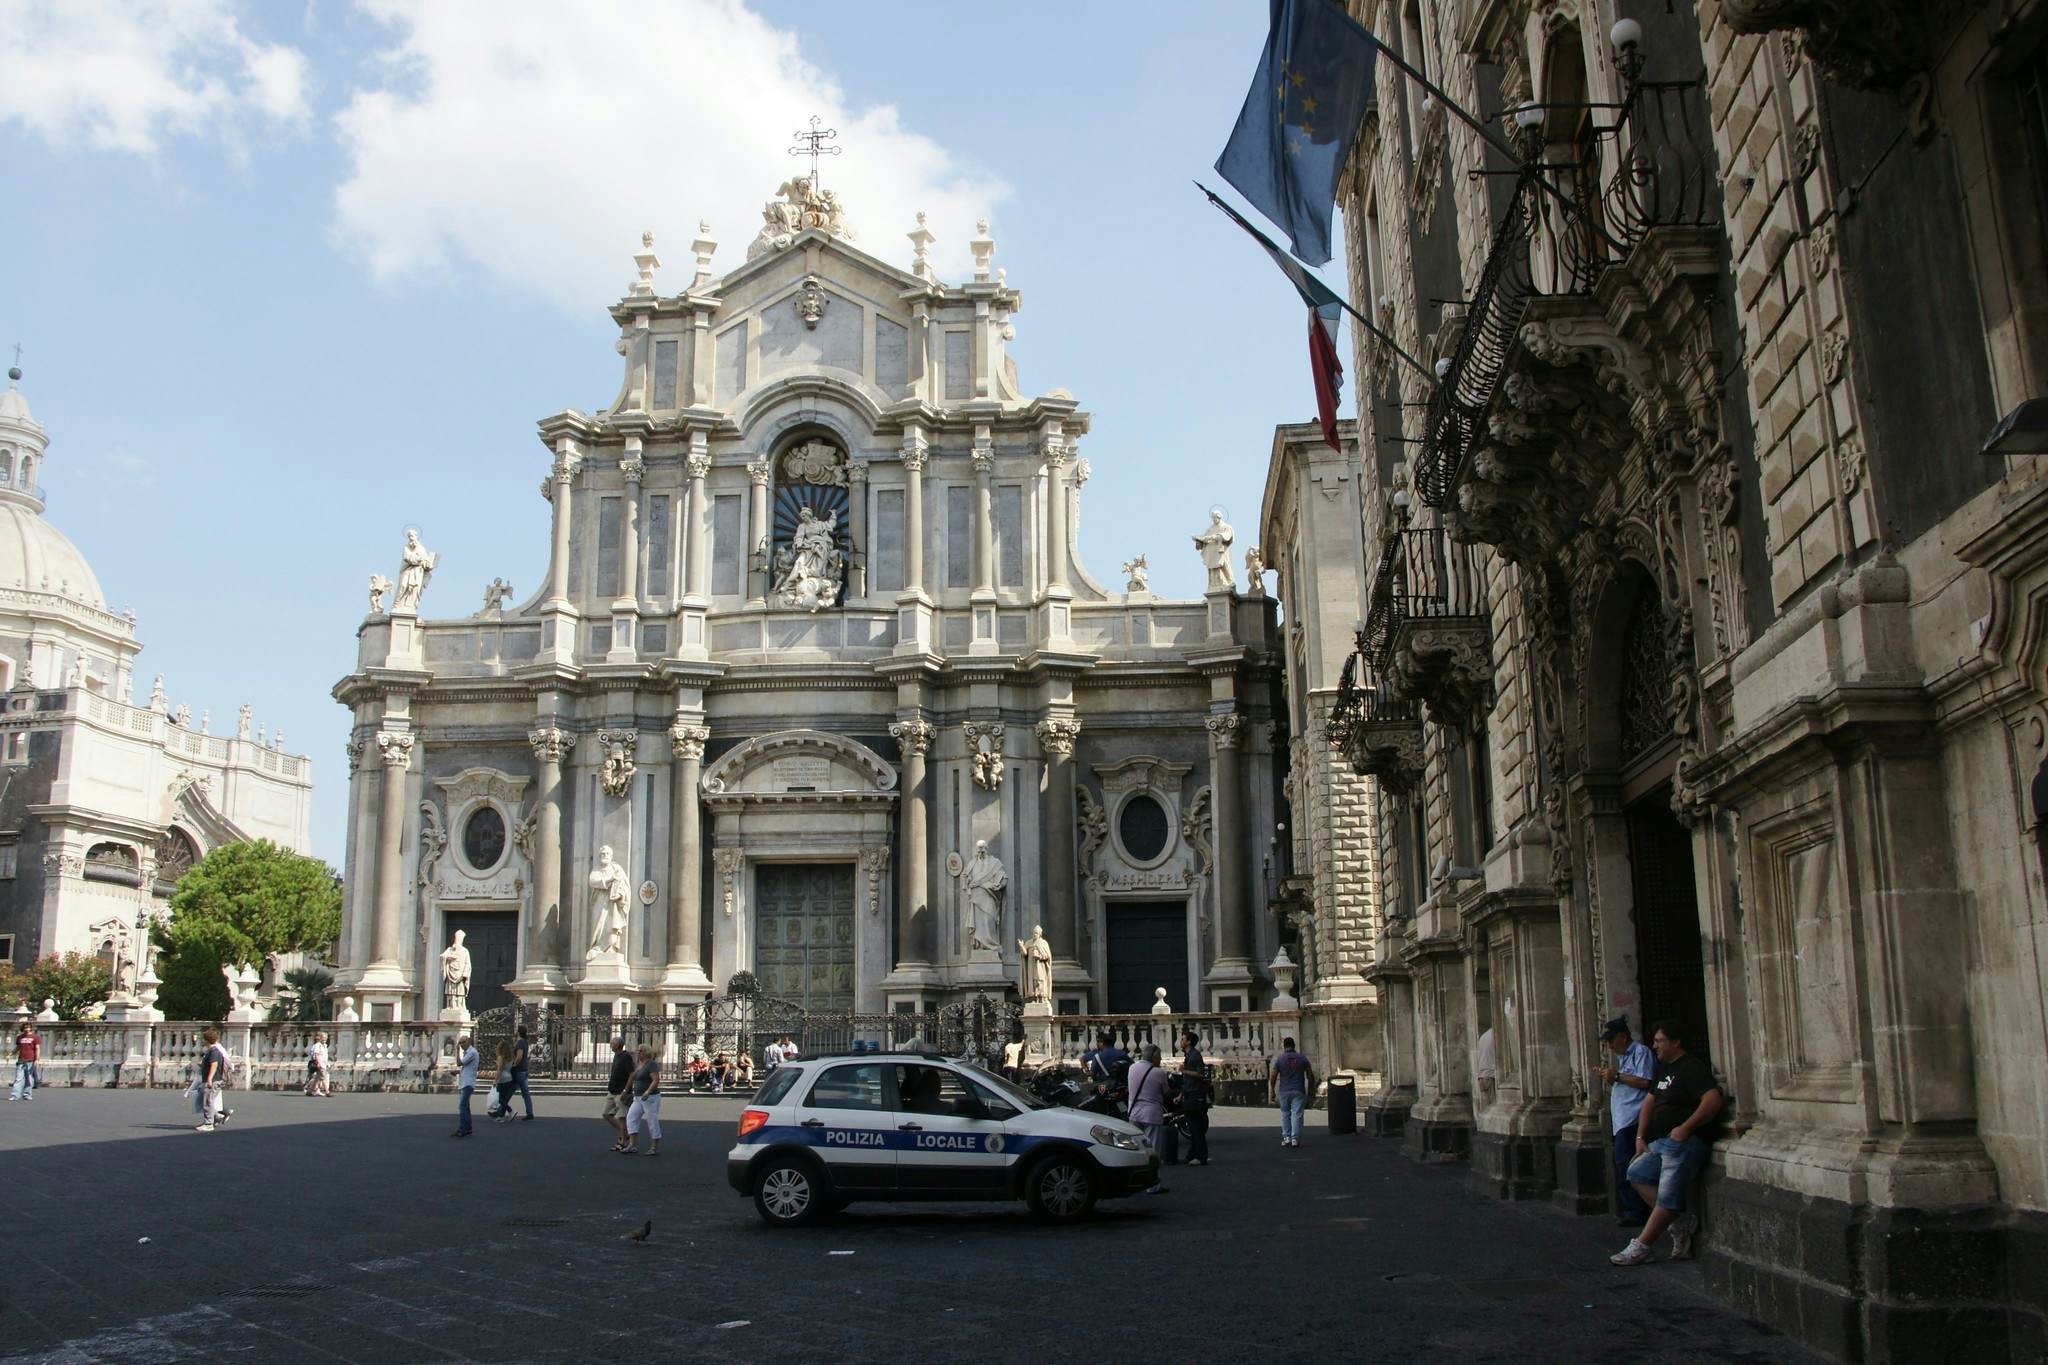 Basilica Cattedrale di Sant'Agata